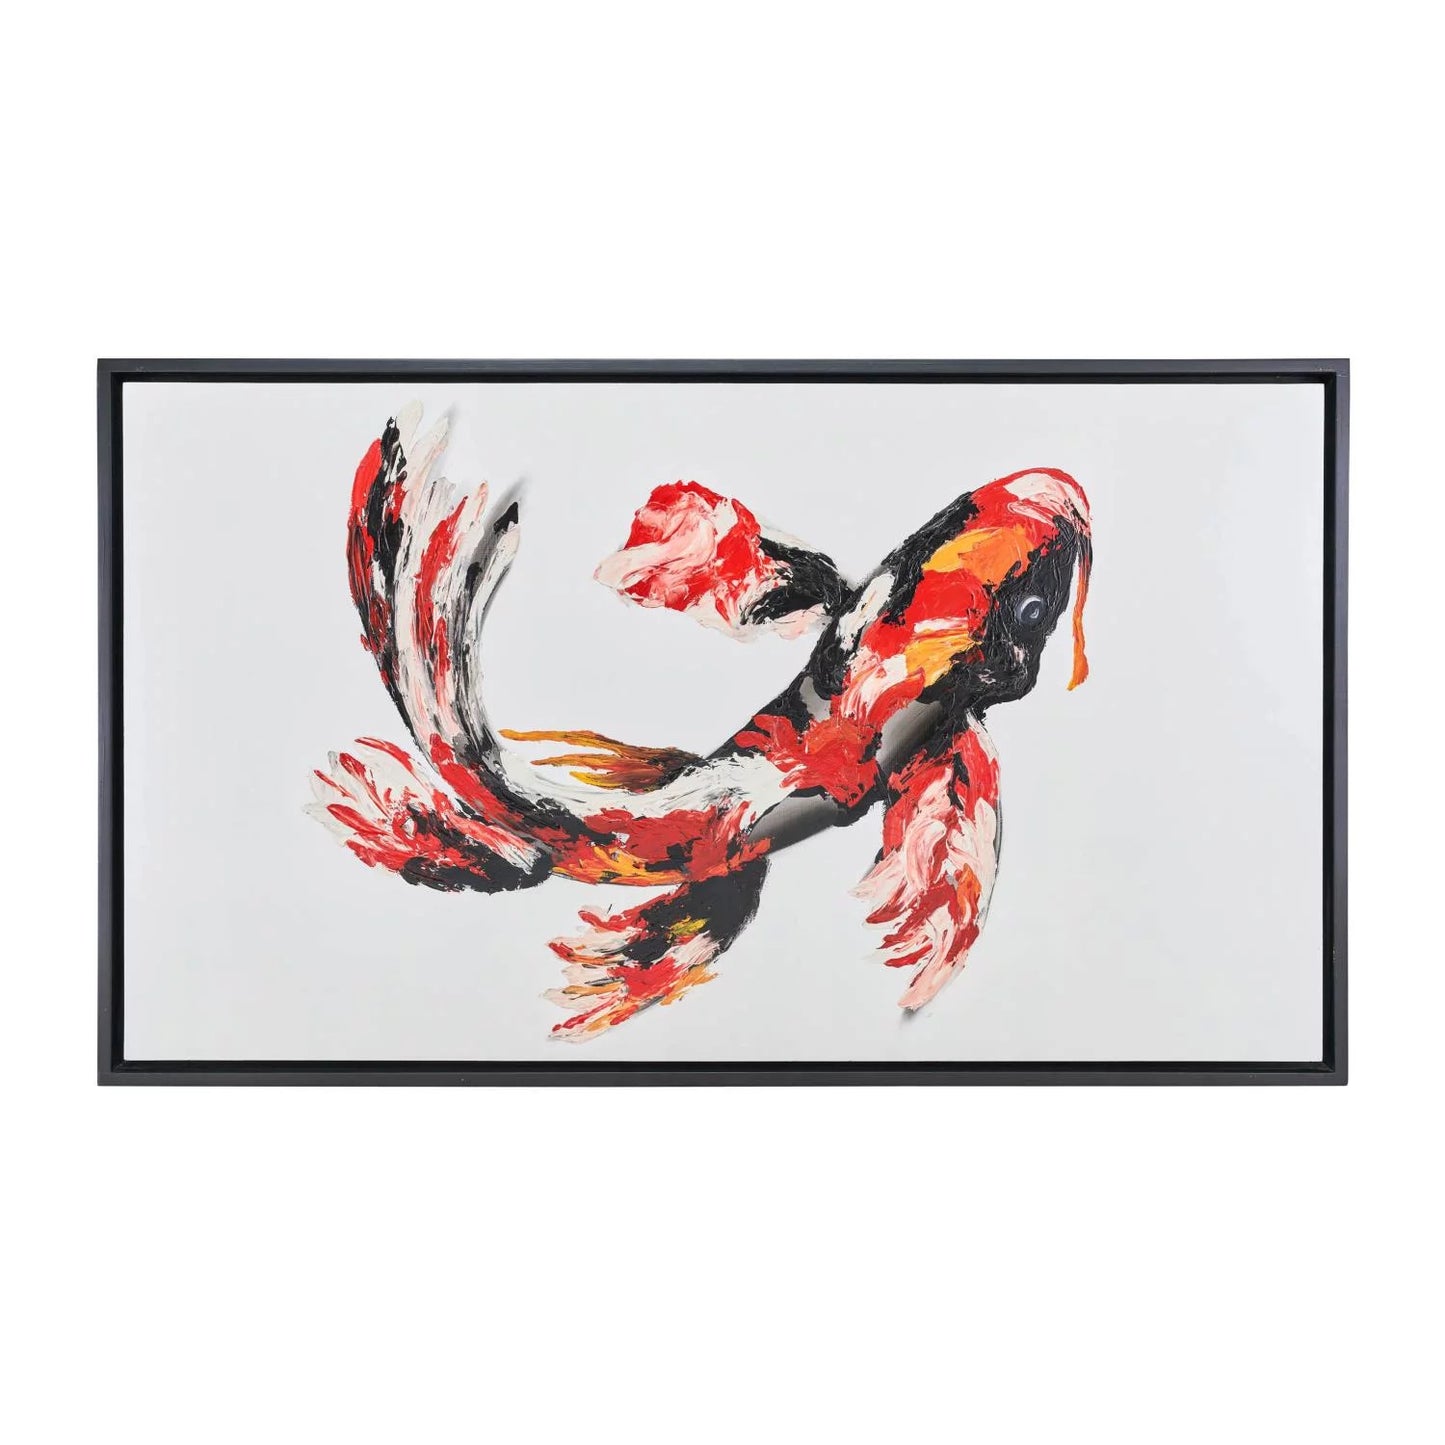 59 x 35 Hand Painted Koi Fish